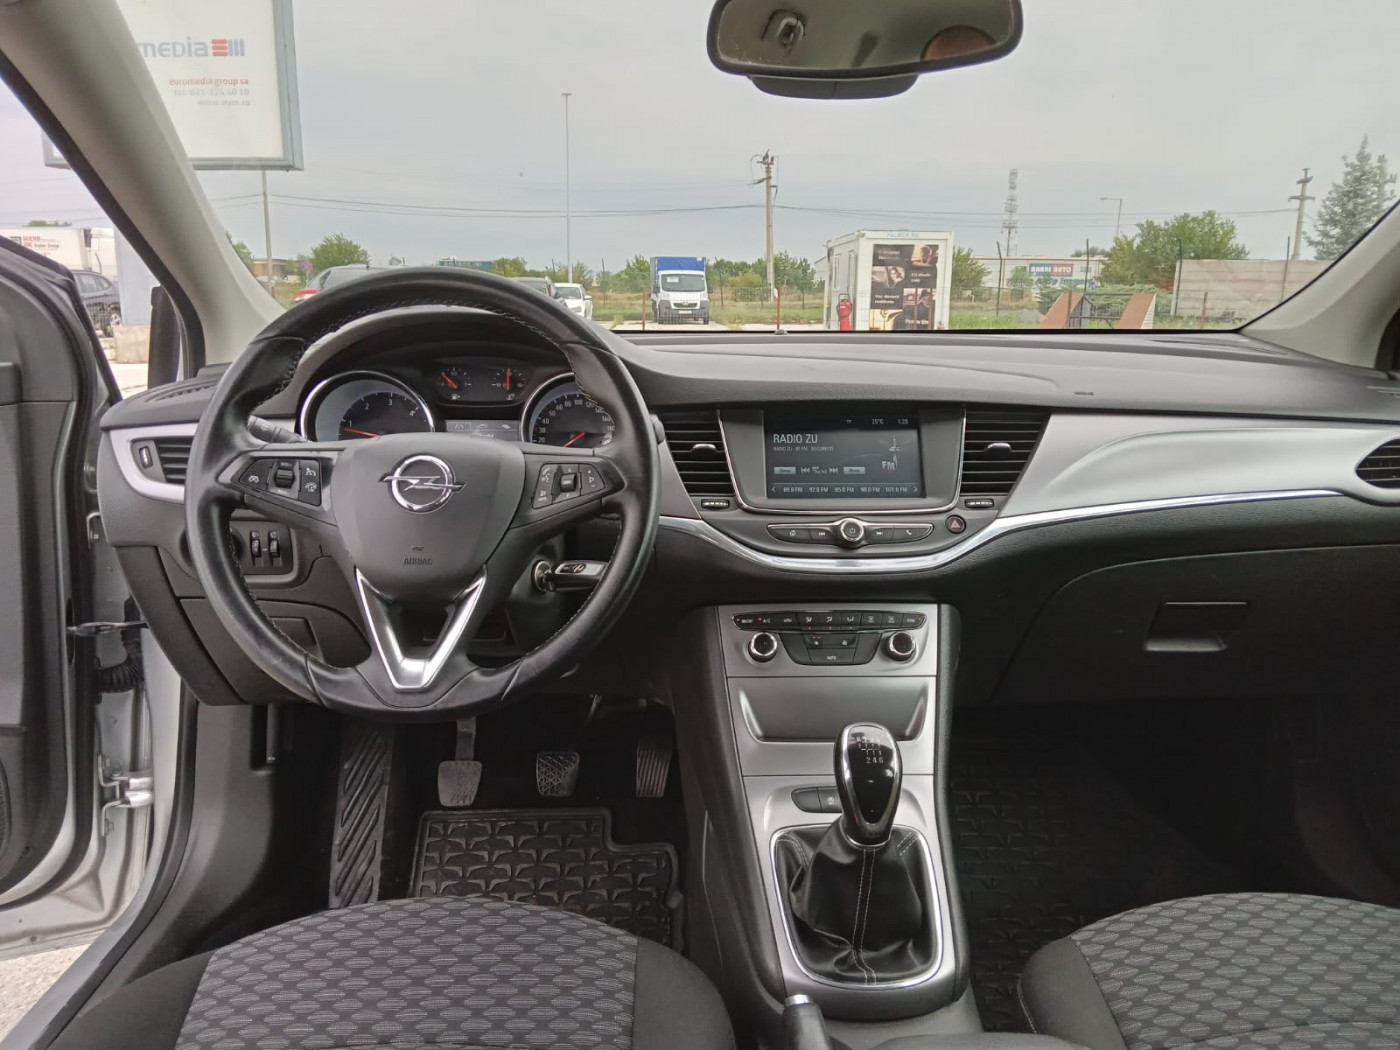 Opel Astra  110 CP   - 9490 €,   211200 km,  anul 2017,  culoare gri 